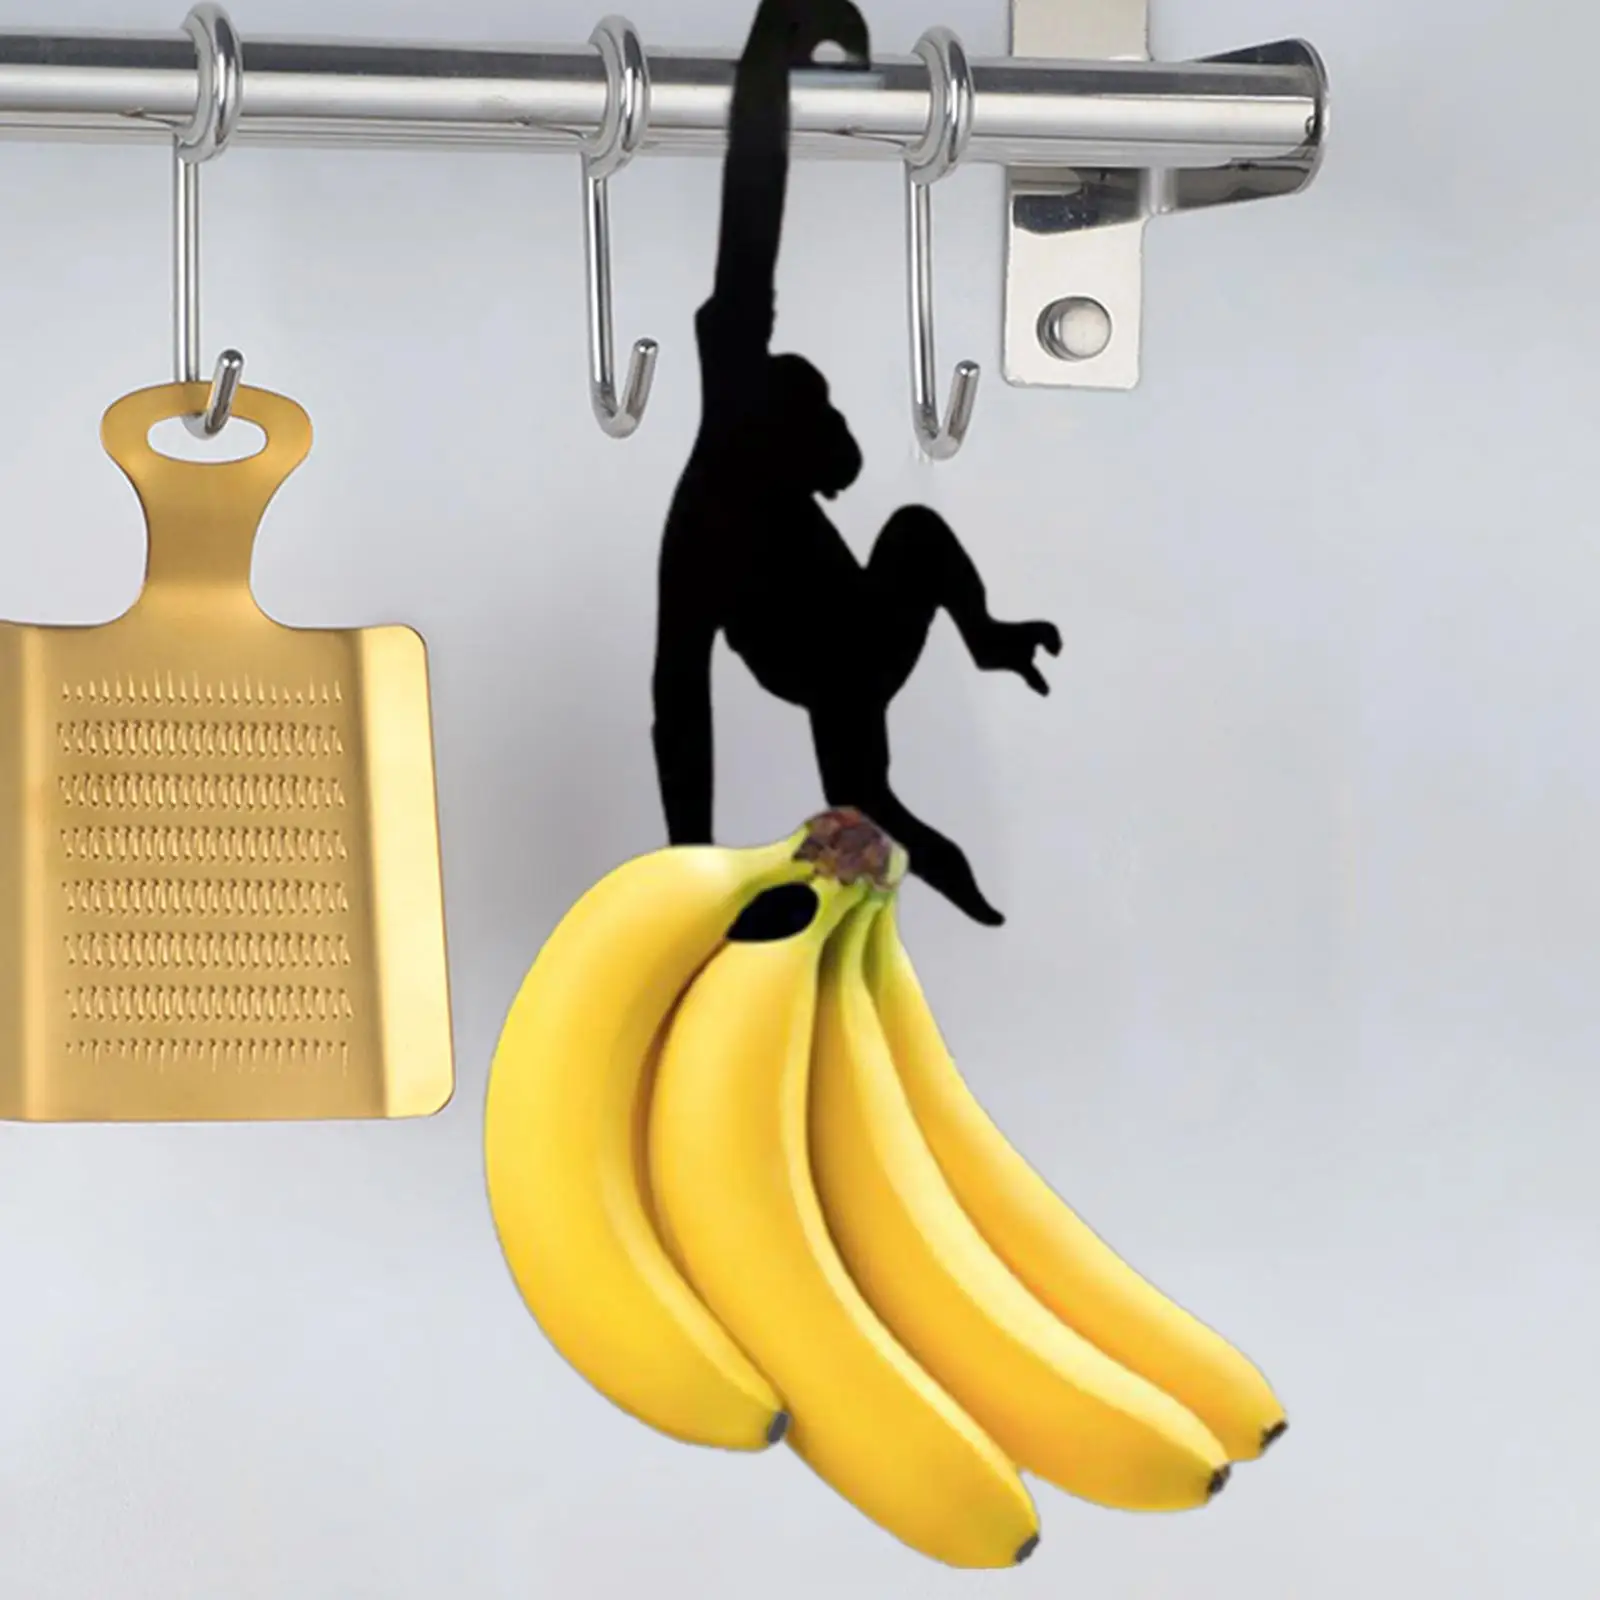 

Вешалка «банан», уникальные настенные Многофункциональные кухонные приспособления, креативный держатель для ключей в виде обезьяны для кухни, ремней, медали, ключей для ванной комнаты